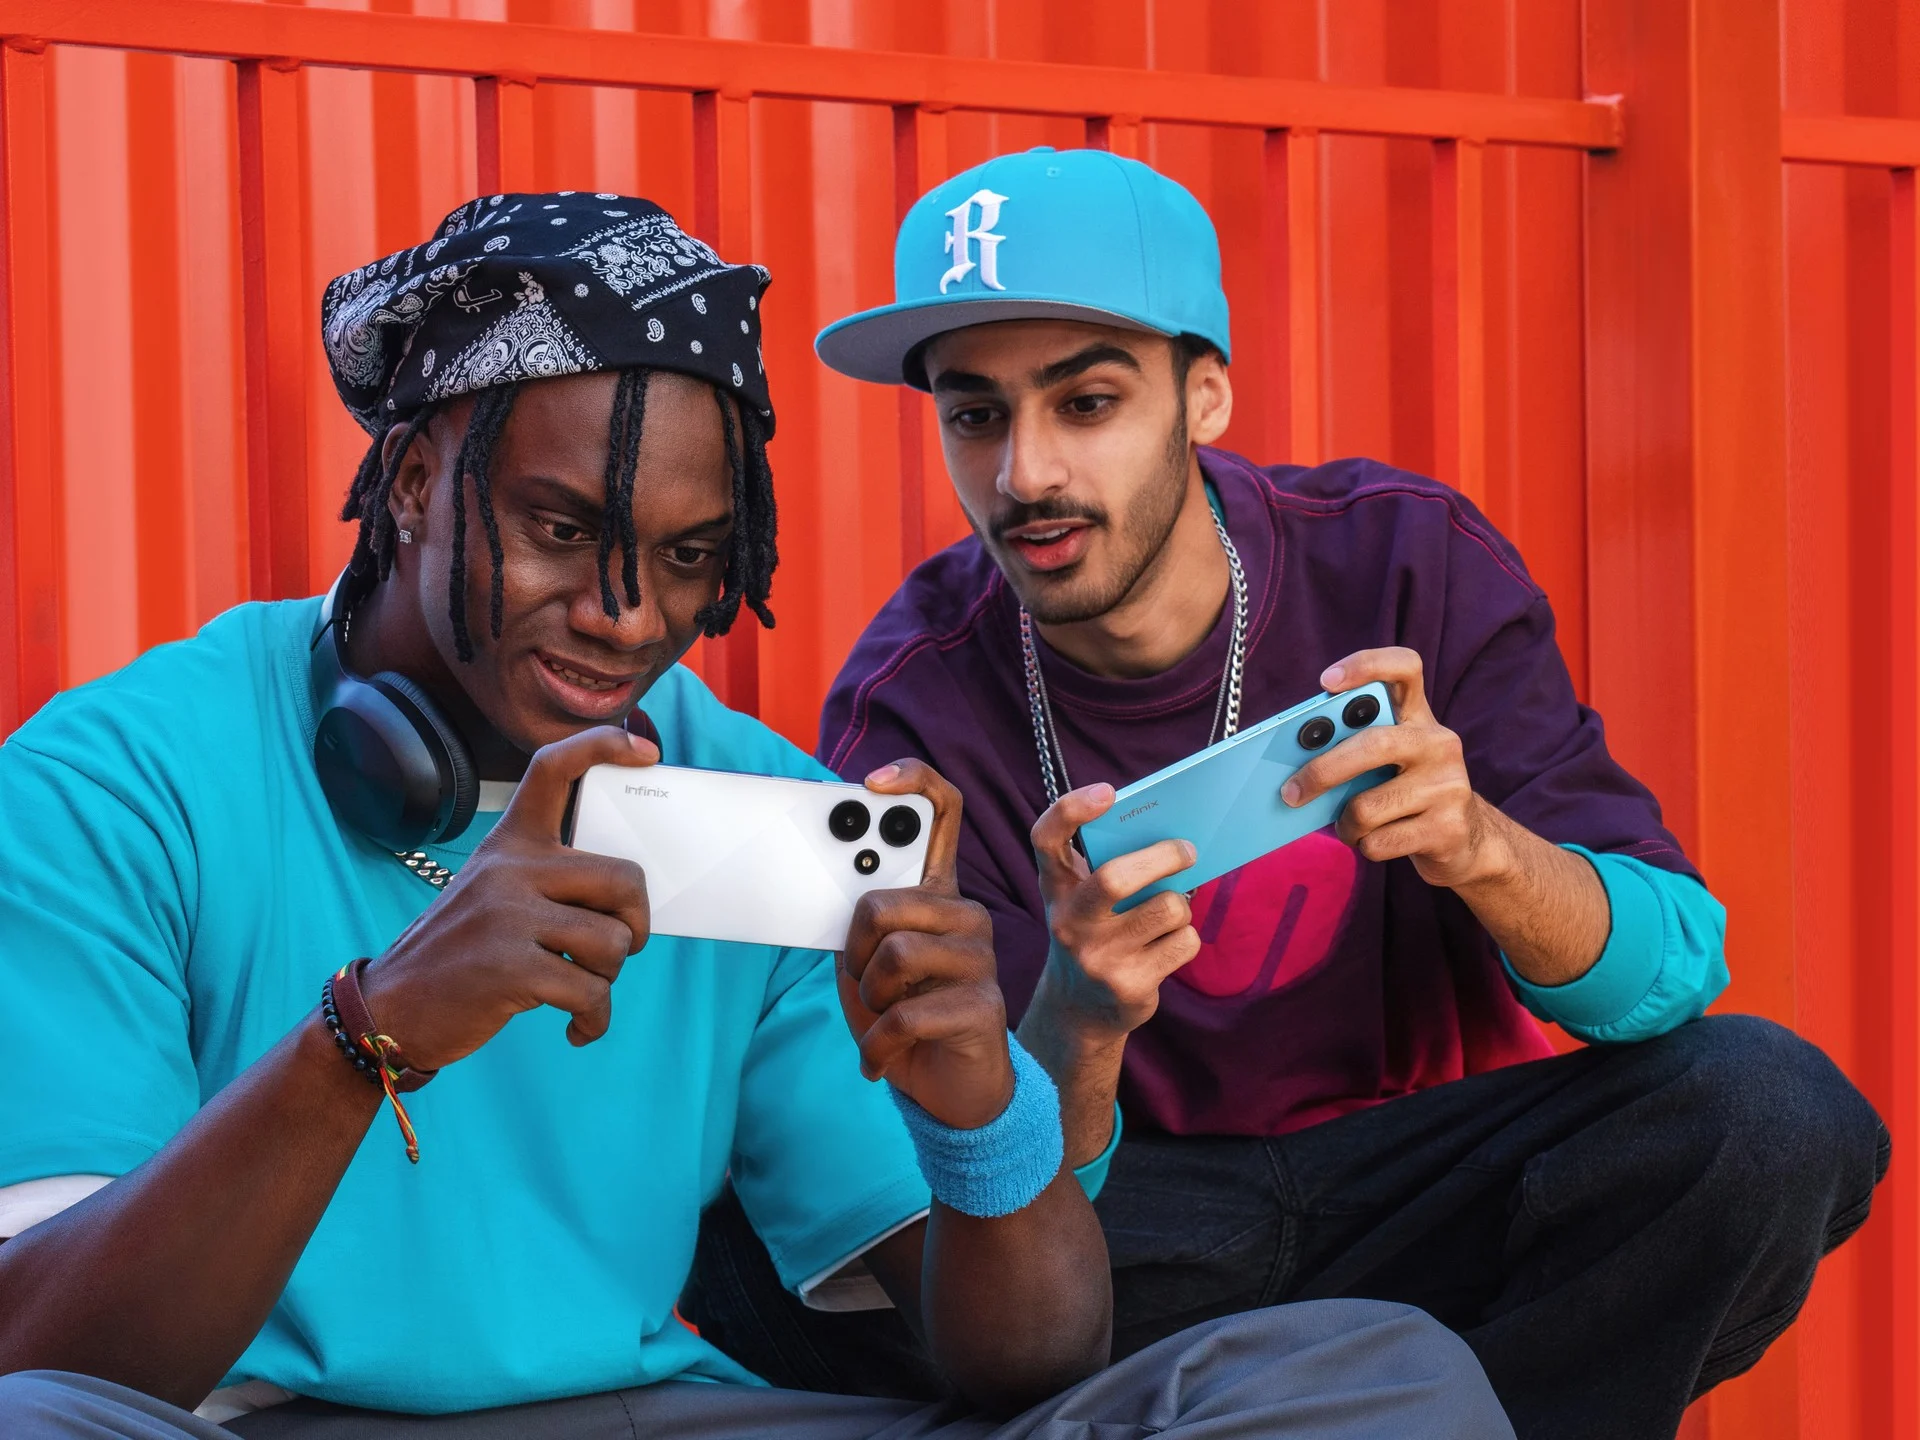 Da esquerda para direita: homem usando camiseta azul, e segurando um celular branco. Homem de bone azul e camiseta preta, segurando um celular azul